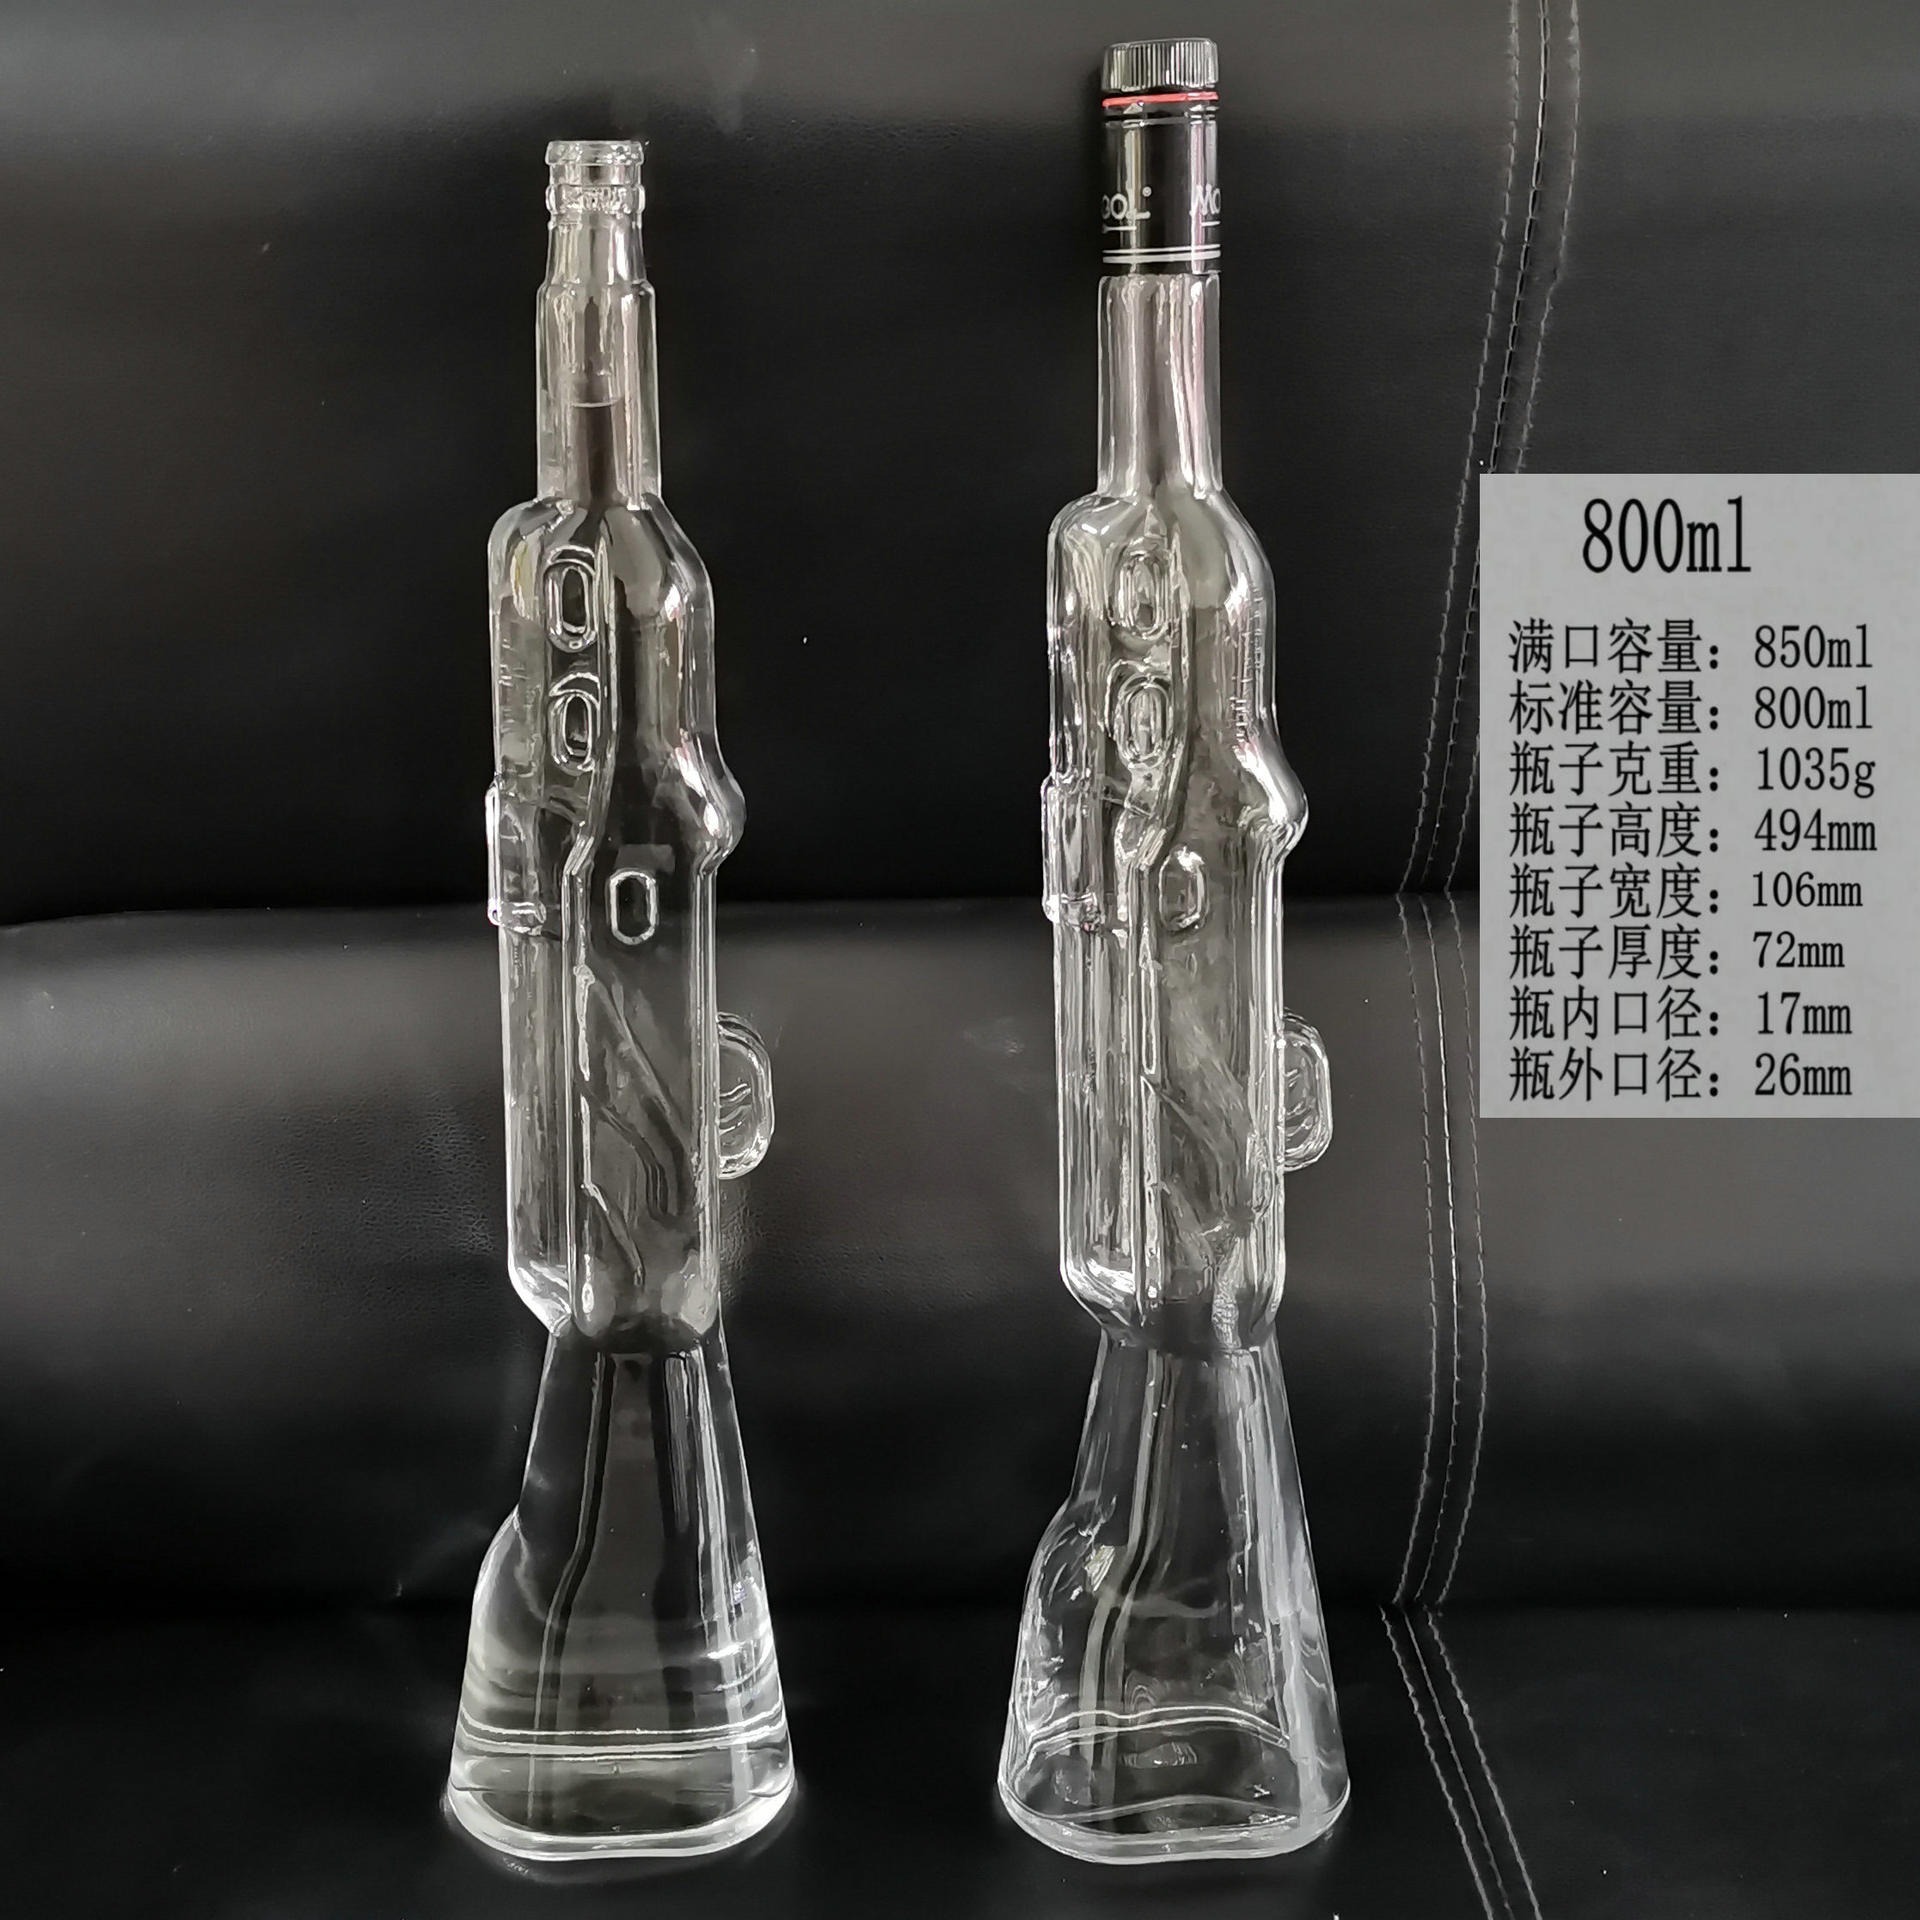 玻璃玩具酒瓶，工艺品新款果汁玻璃瓶800ml，玻璃瓶生产厂家批发订购创意玻璃制品隆安图片